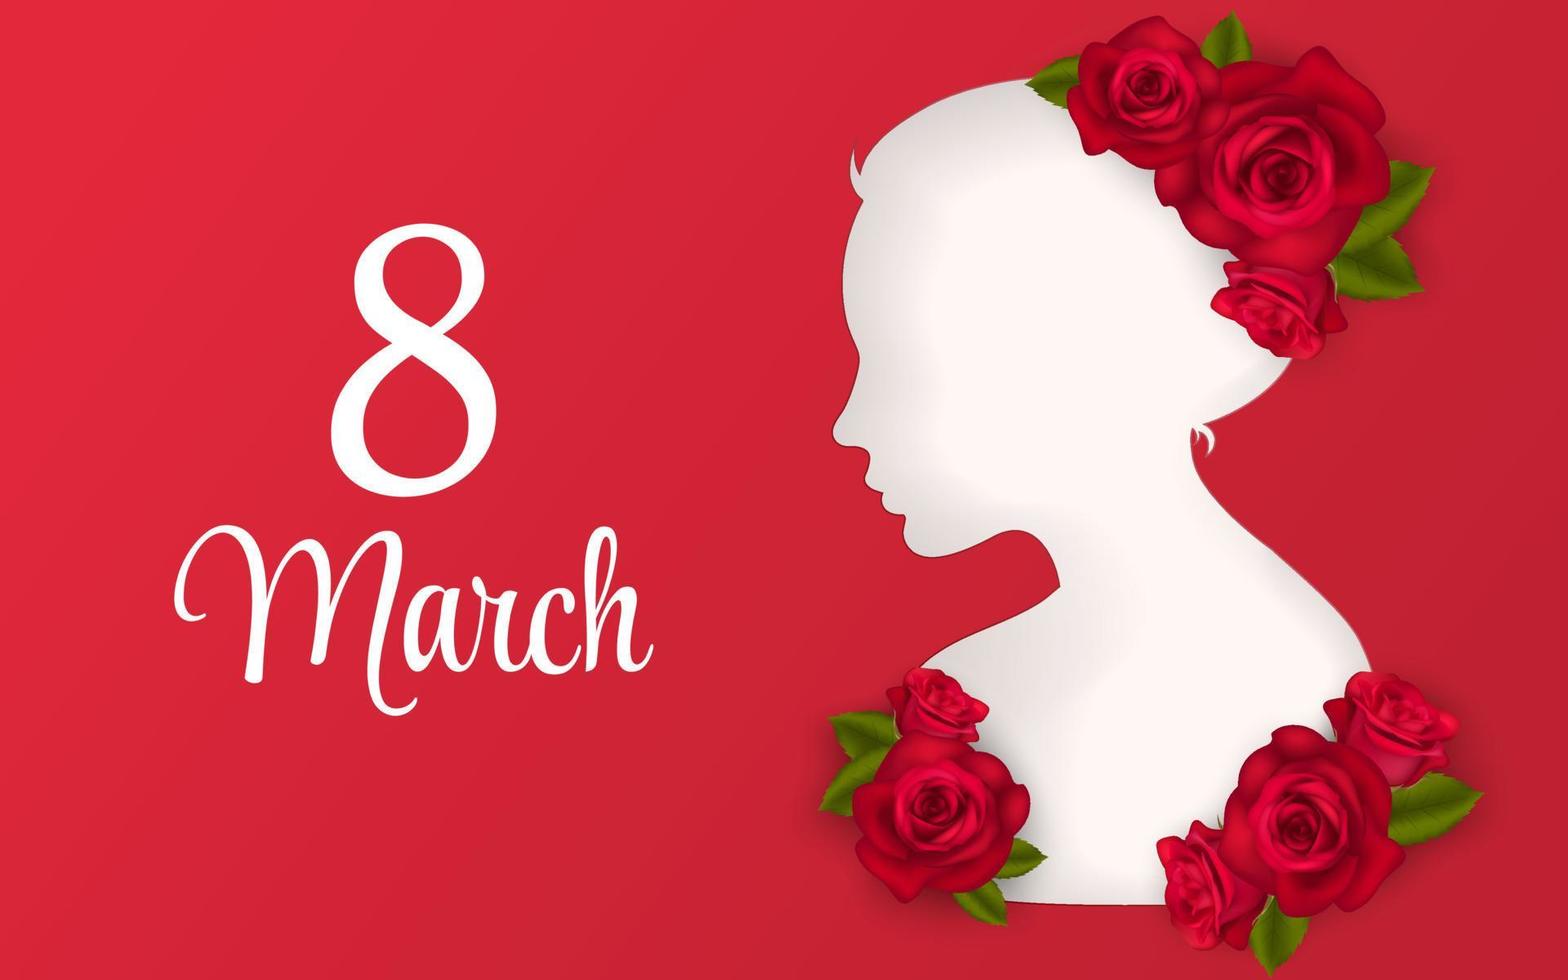 8 marzo saludo bandera con rojo realista rosas flor ramo. mujer cortar fuera silueta, De las mujeres día sitio web encabezamiento vector ilustración. modelo para publicidad, web, social medios de comunicación